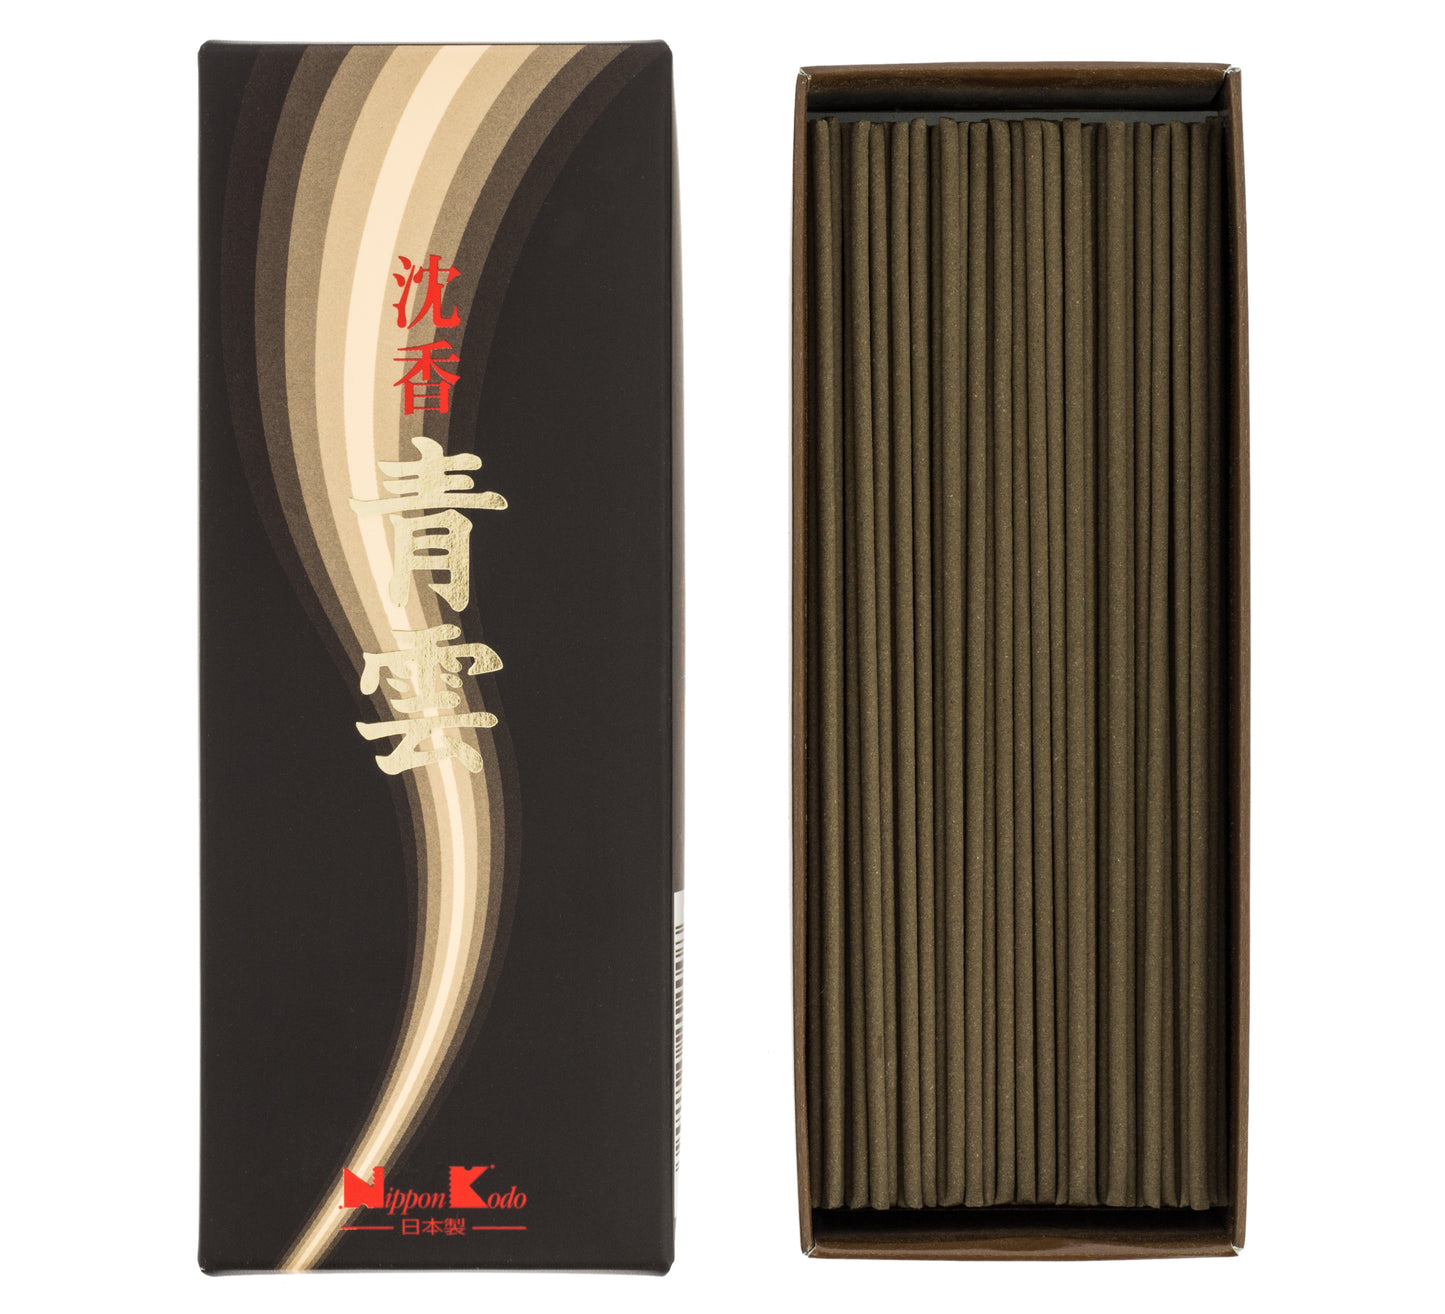 Seiun Jinkoh Incense - Large Box